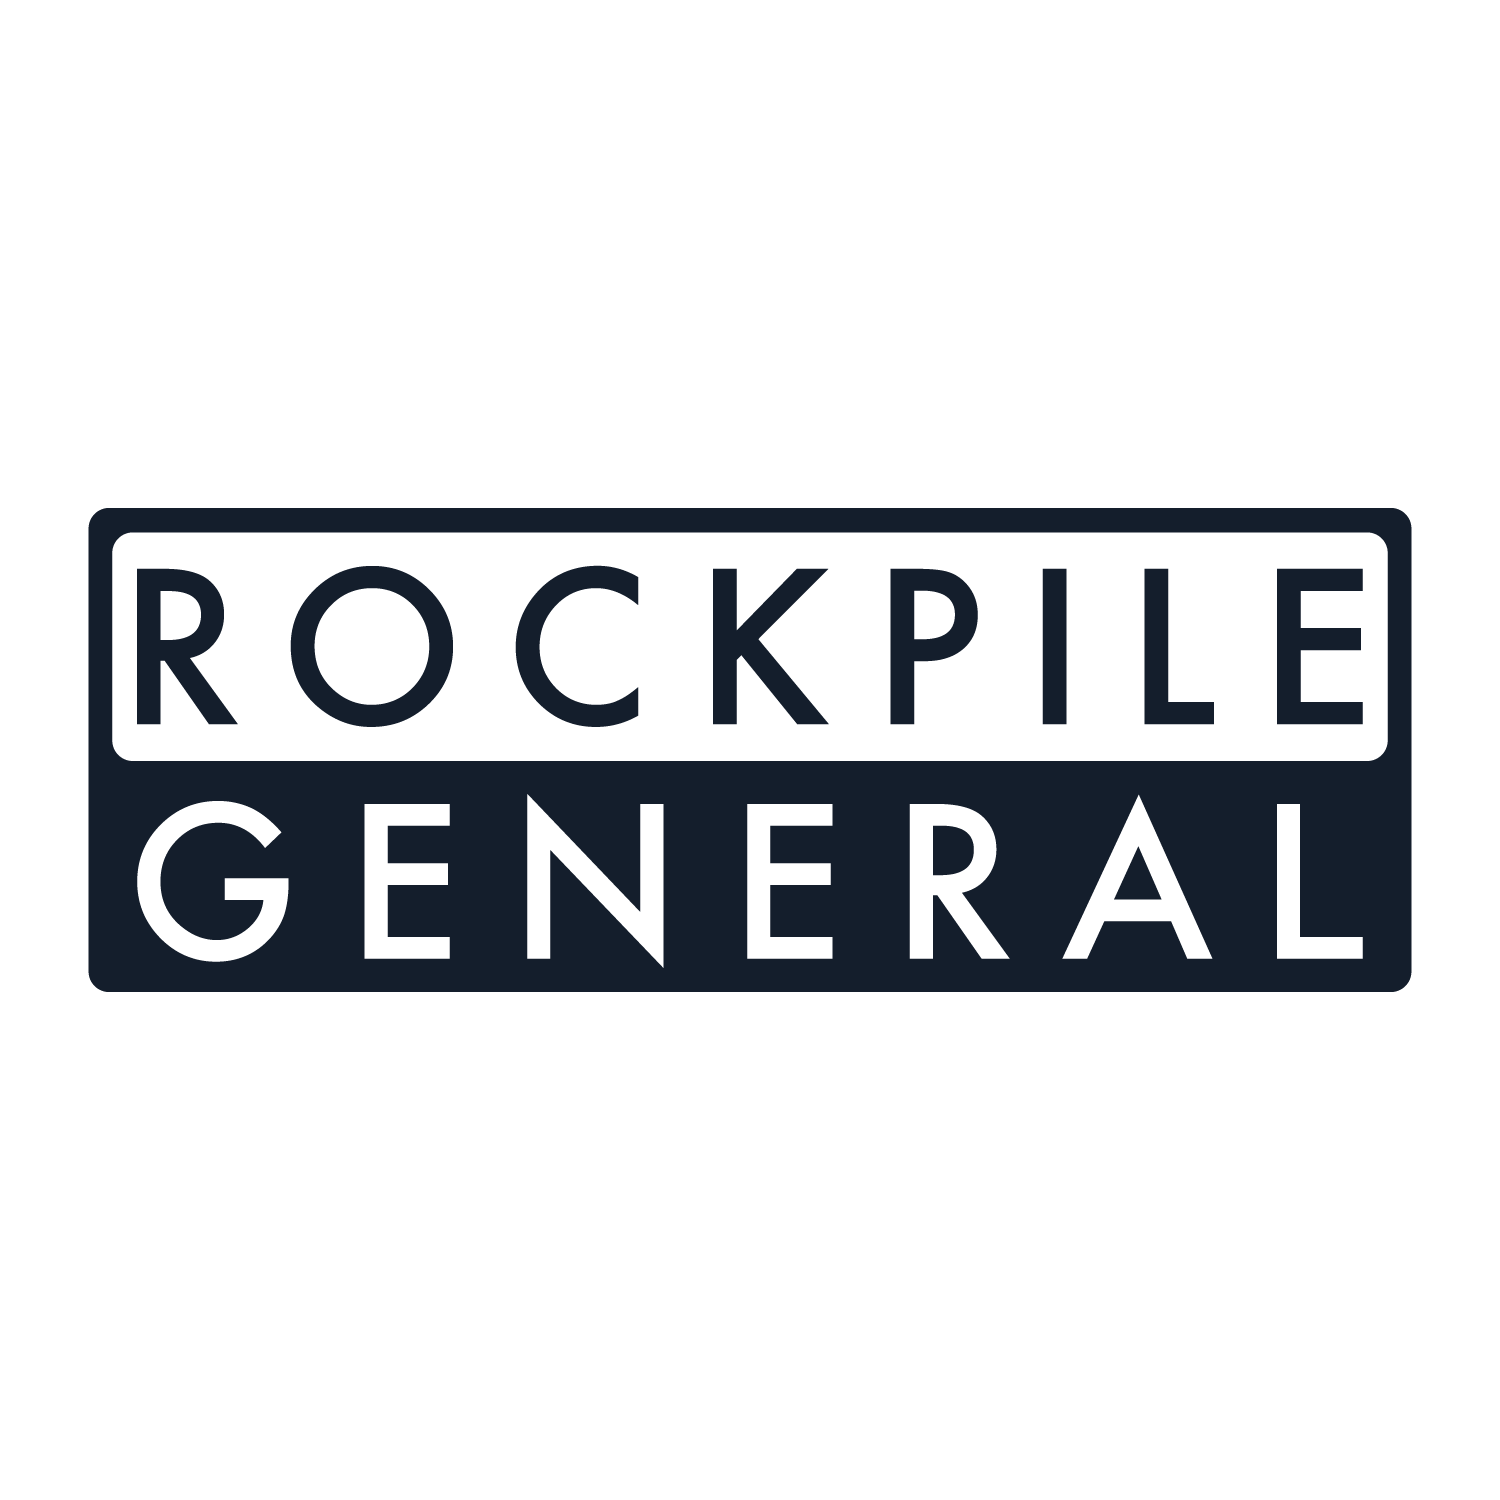 ROCKPILE GENERAL